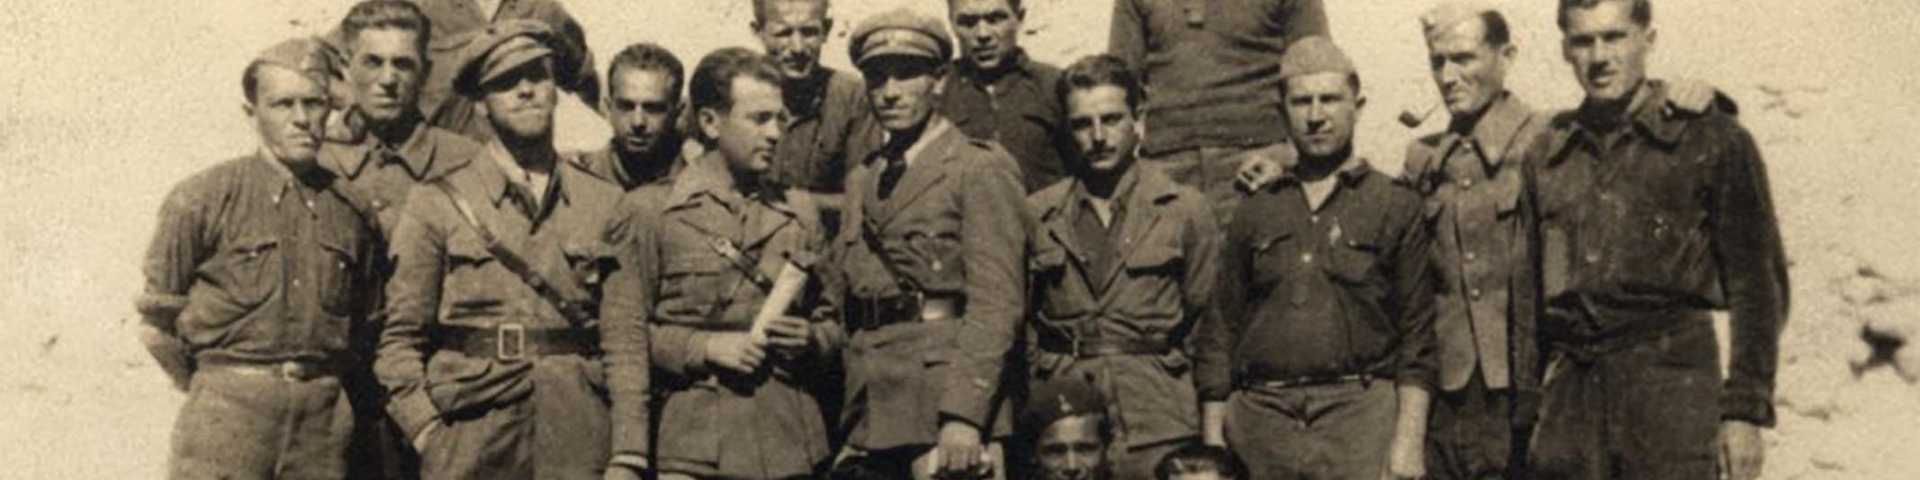 Из тајне историје КПЈ: Југословенски добровољци у Шпанском грађанском рату и пропала мисија брода „Корзика“